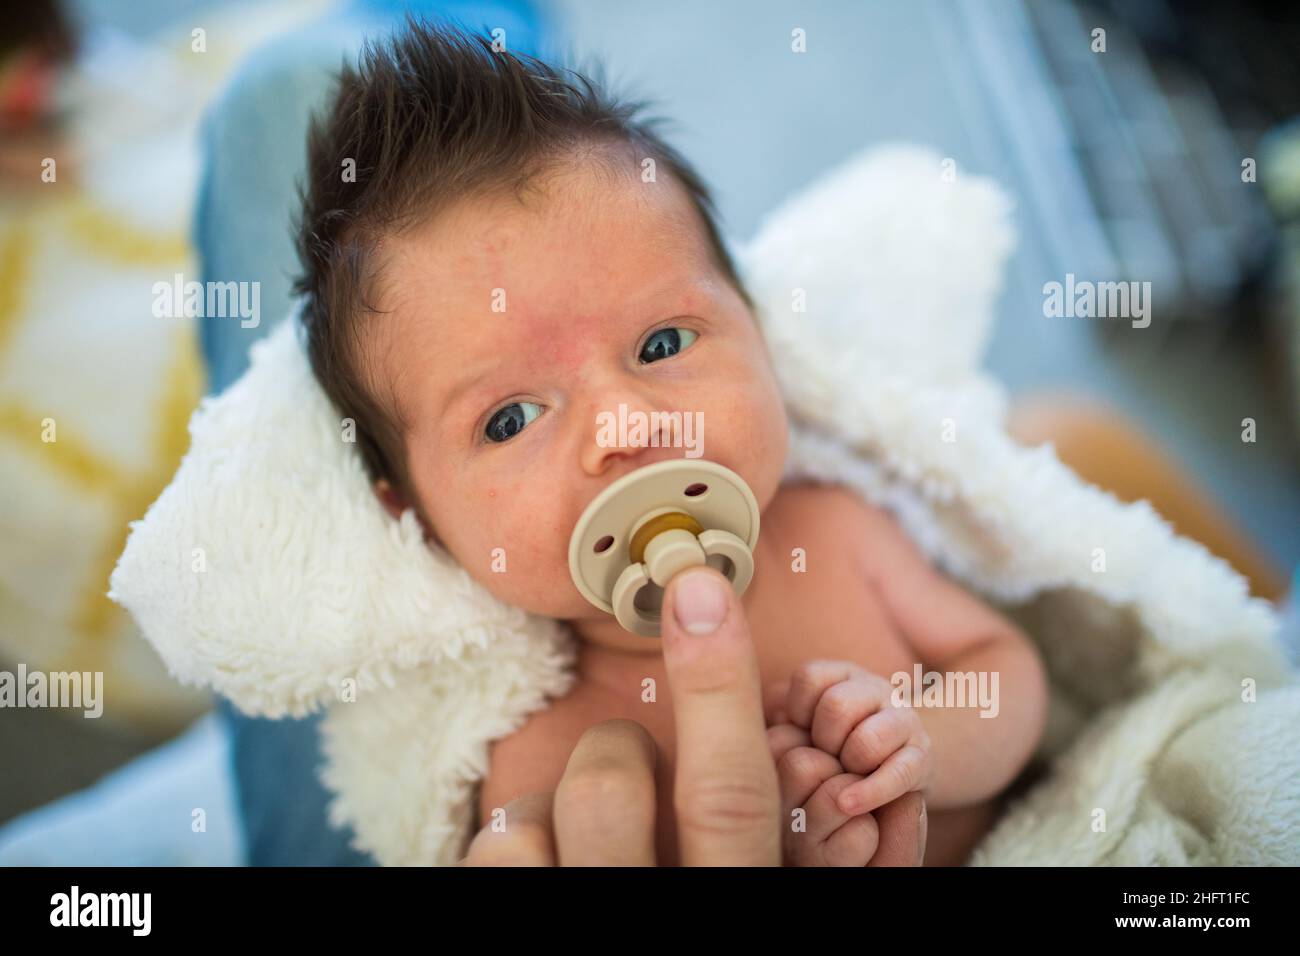 Dettaglio del genitore che tiene il succhietto nella bocca del neonato. Foto Stock